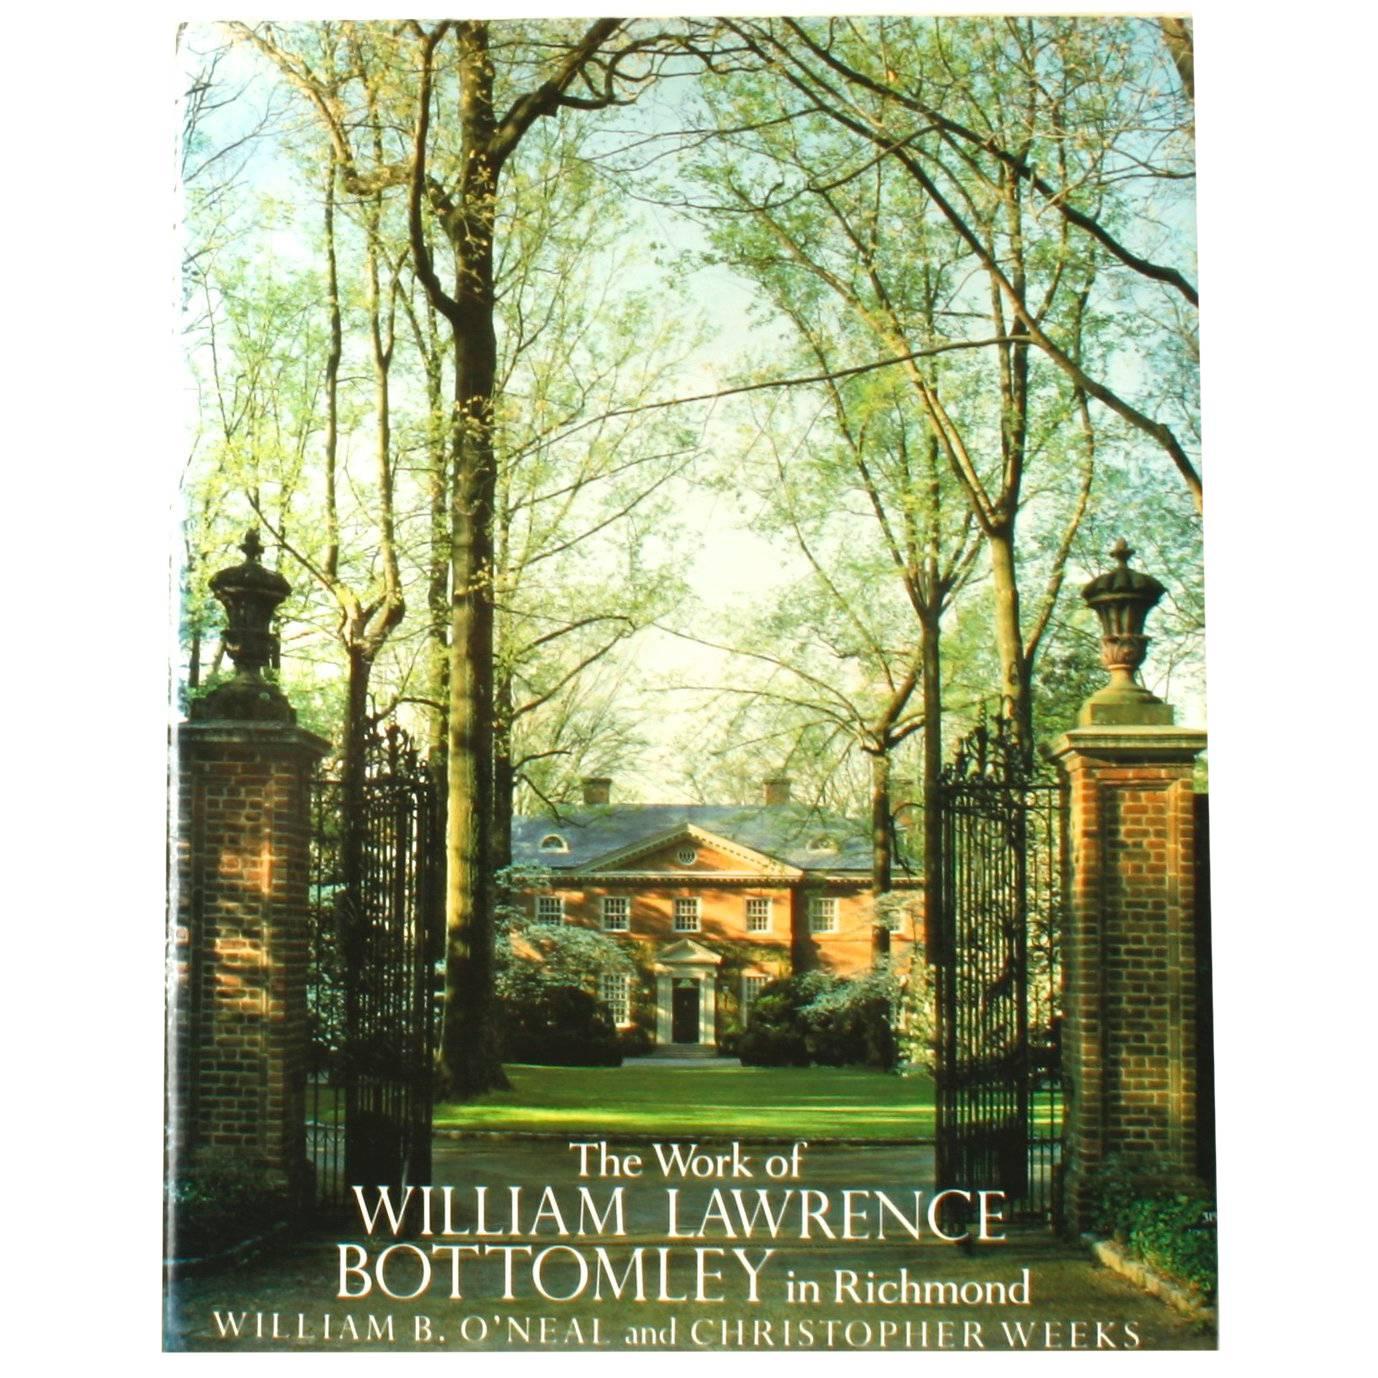 Werk von William Lawrence Bottomley in Richmond, signierte Erstausgabe